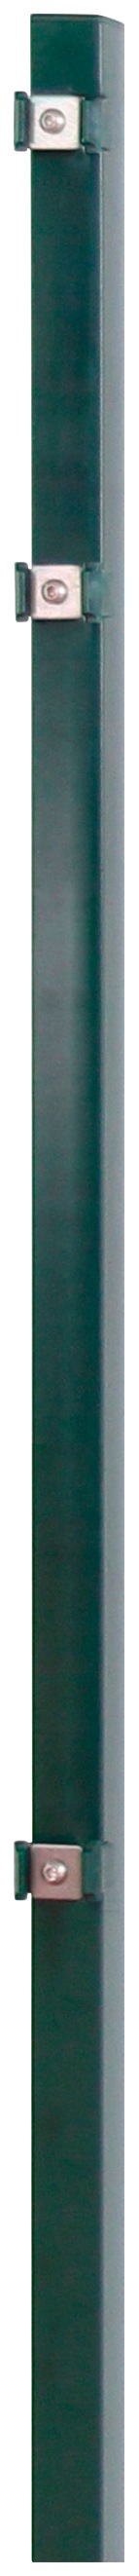 Arvotec Zaunpfosten "ESSENTIAL 100", 4x4x150 cm für Mattenhöhe 100 cm, zum günstig online kaufen